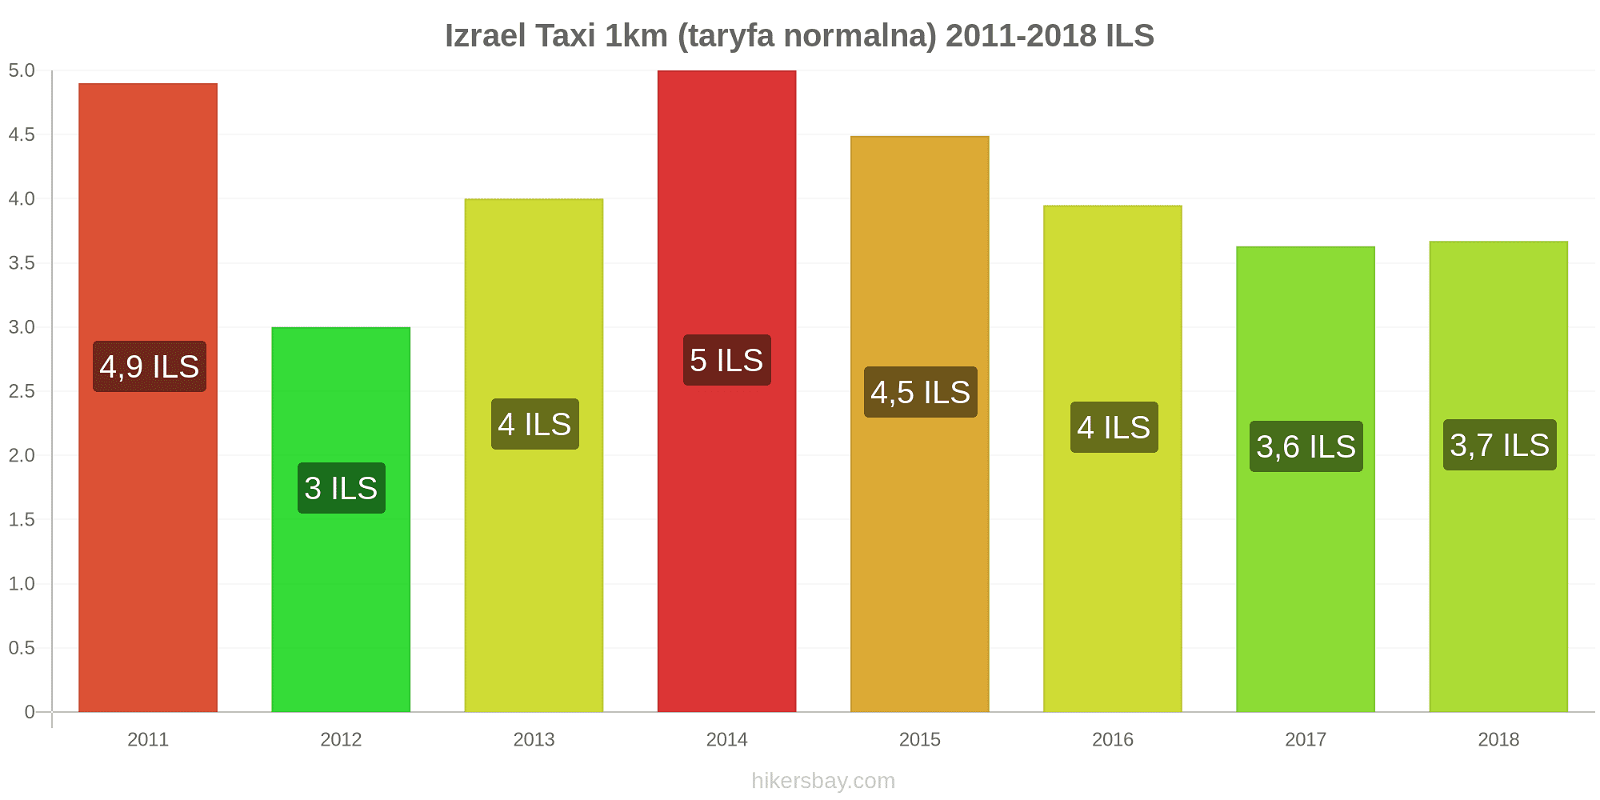 Izrael zmiany cen Taxi 1km (taryfa normalna) hikersbay.com